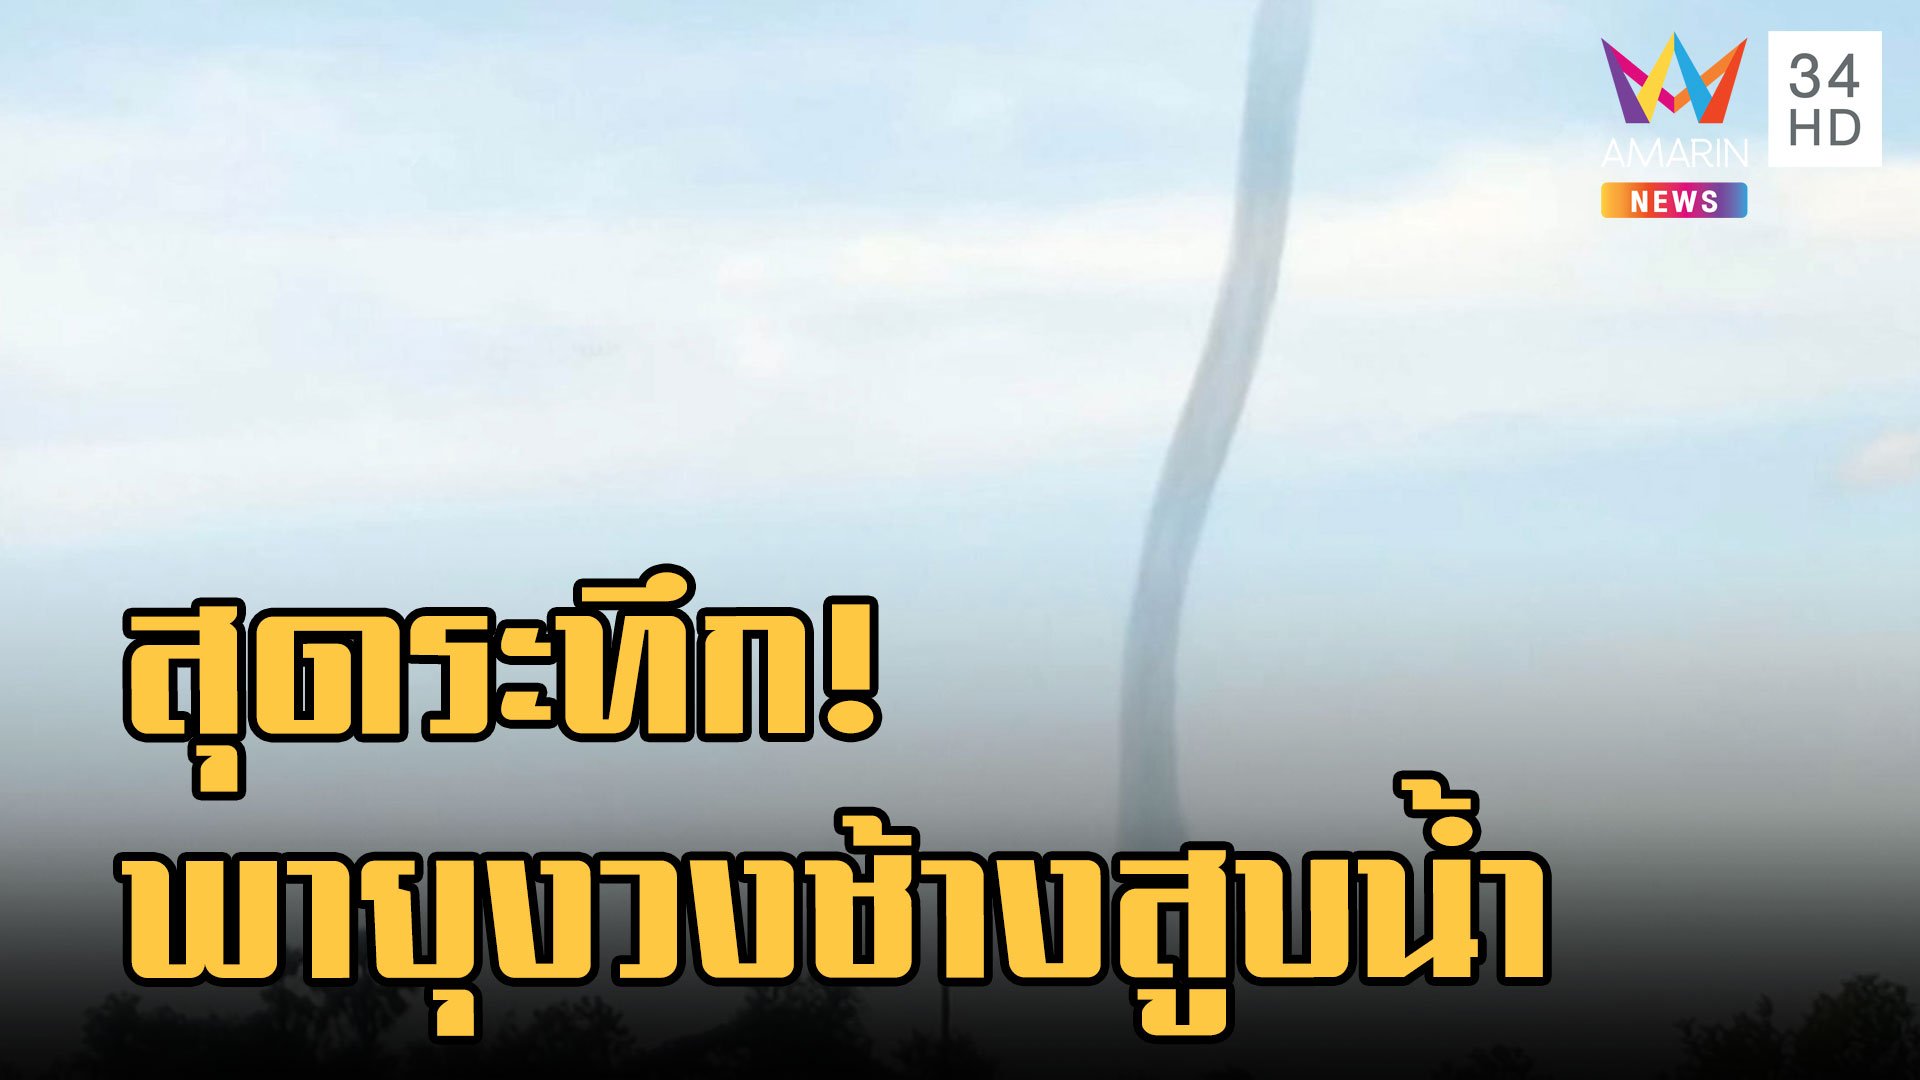 พายุงวงช้างกลางหนองหาร จ.สกลนคร หอบน้ำขึ้นอากาศ | ข่าวอรุณอมรินทร์ | 4 ก.ย. 65 | AMARIN TVHD34